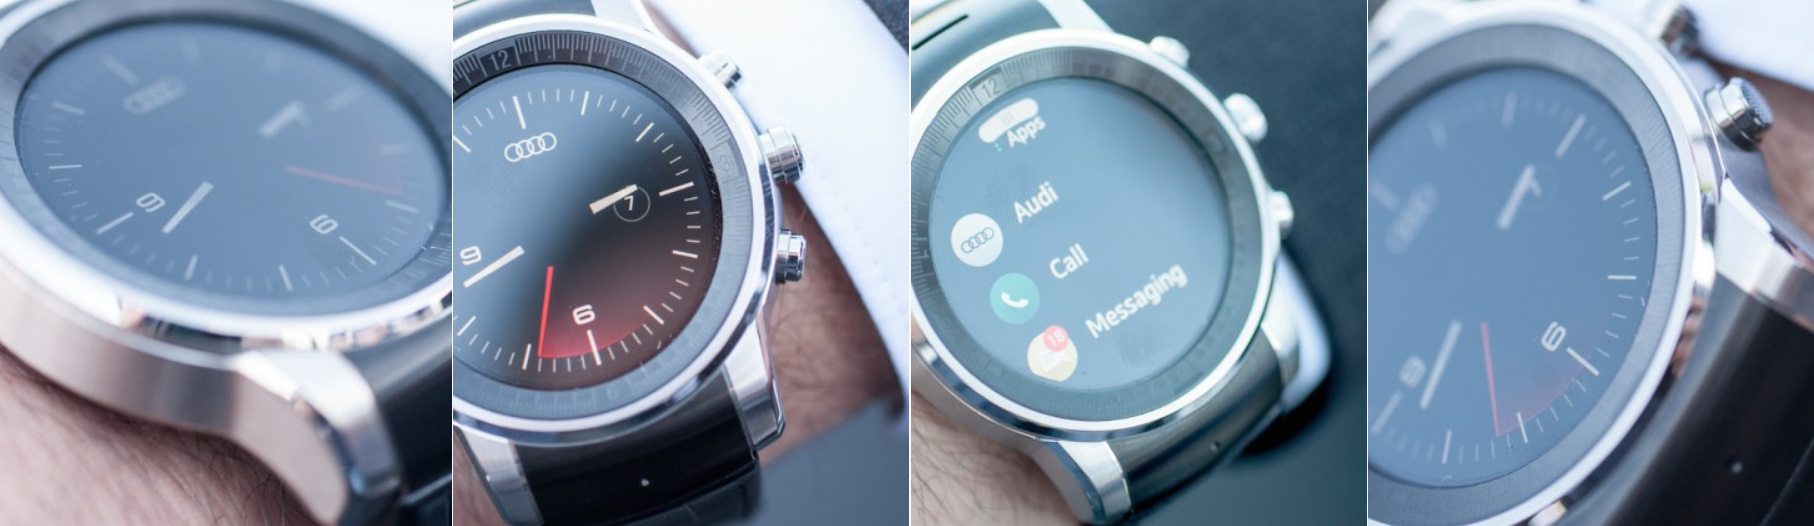 CES 2015: El nuevo smartwatch de LG corre WebOS y no Android Wear